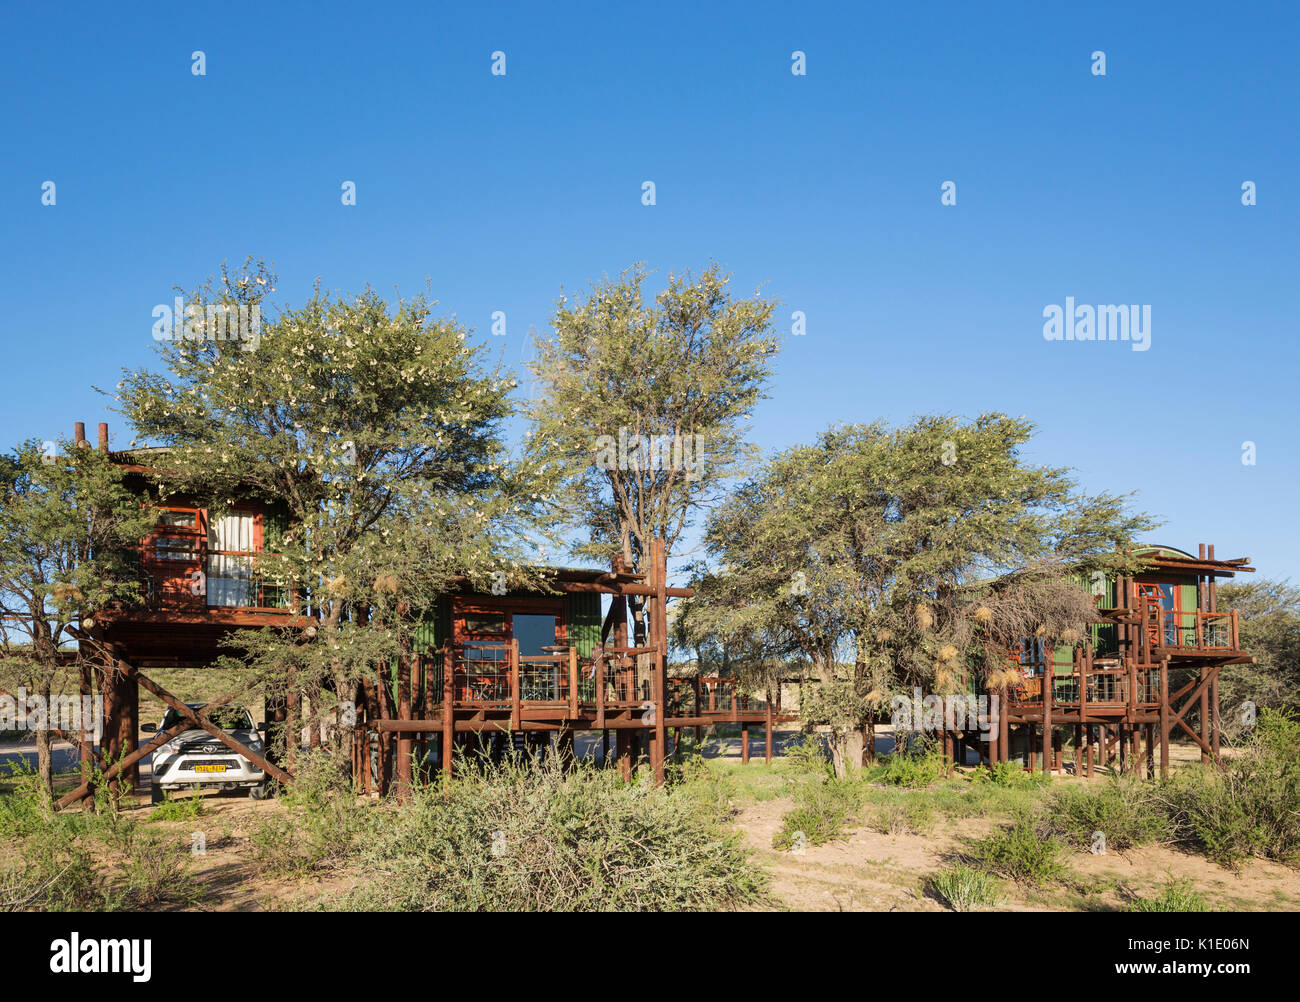 Urikaarus Wildnis Camp mit stelzenläufer Kabinen an der Bank von trockenen Auob Riverbed, Camelthorn Bäume (Acacia Erioloba), Kalahari Wüste Stockfoto